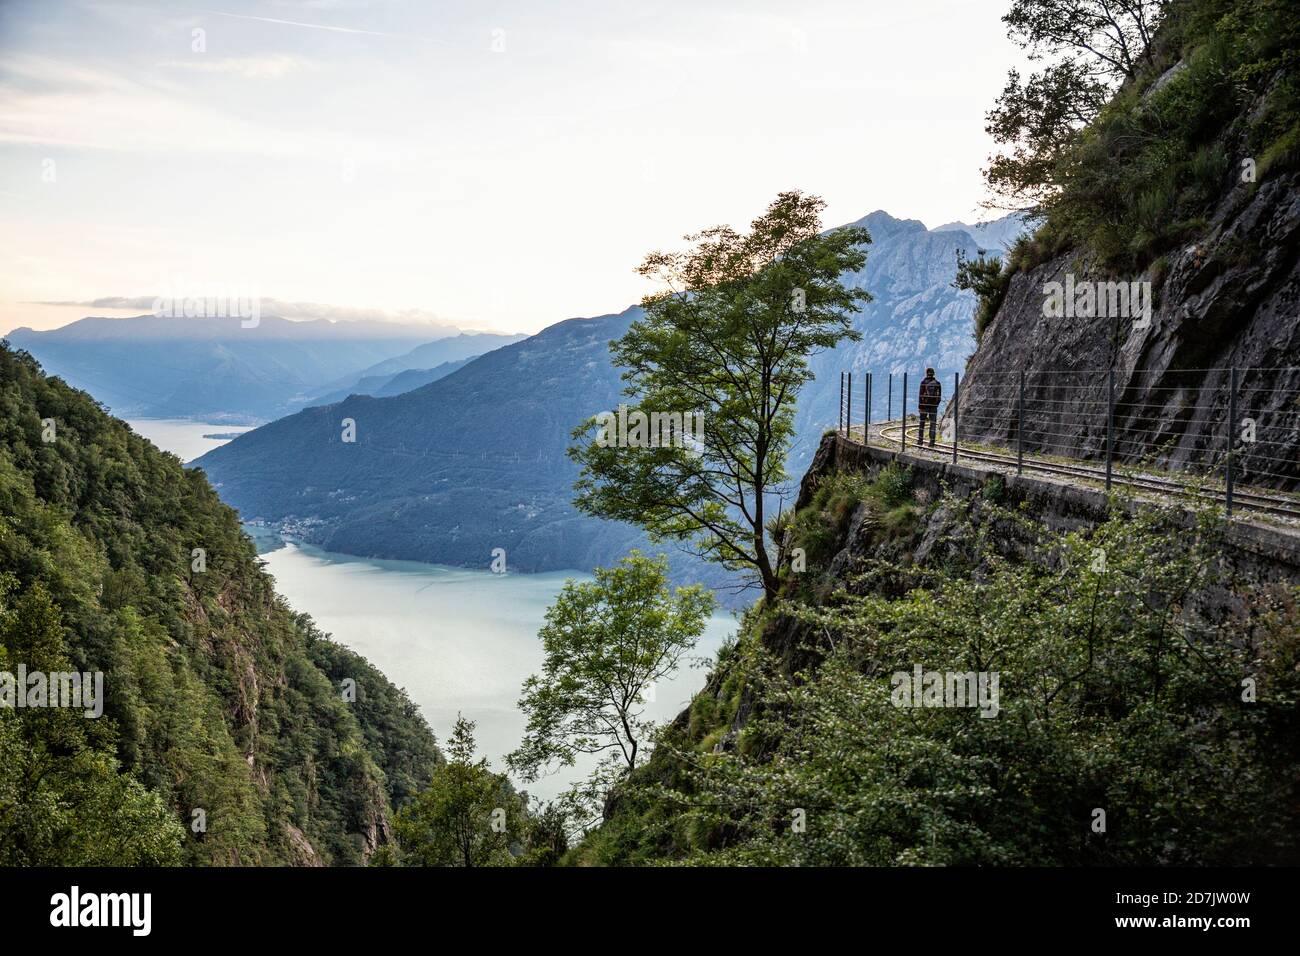 Italia, Provincia di Sondrio, Silhouette di escursionista ammirando il Lago Mezzola dal bordo recintato del sentiero Tracciolino Foto Stock